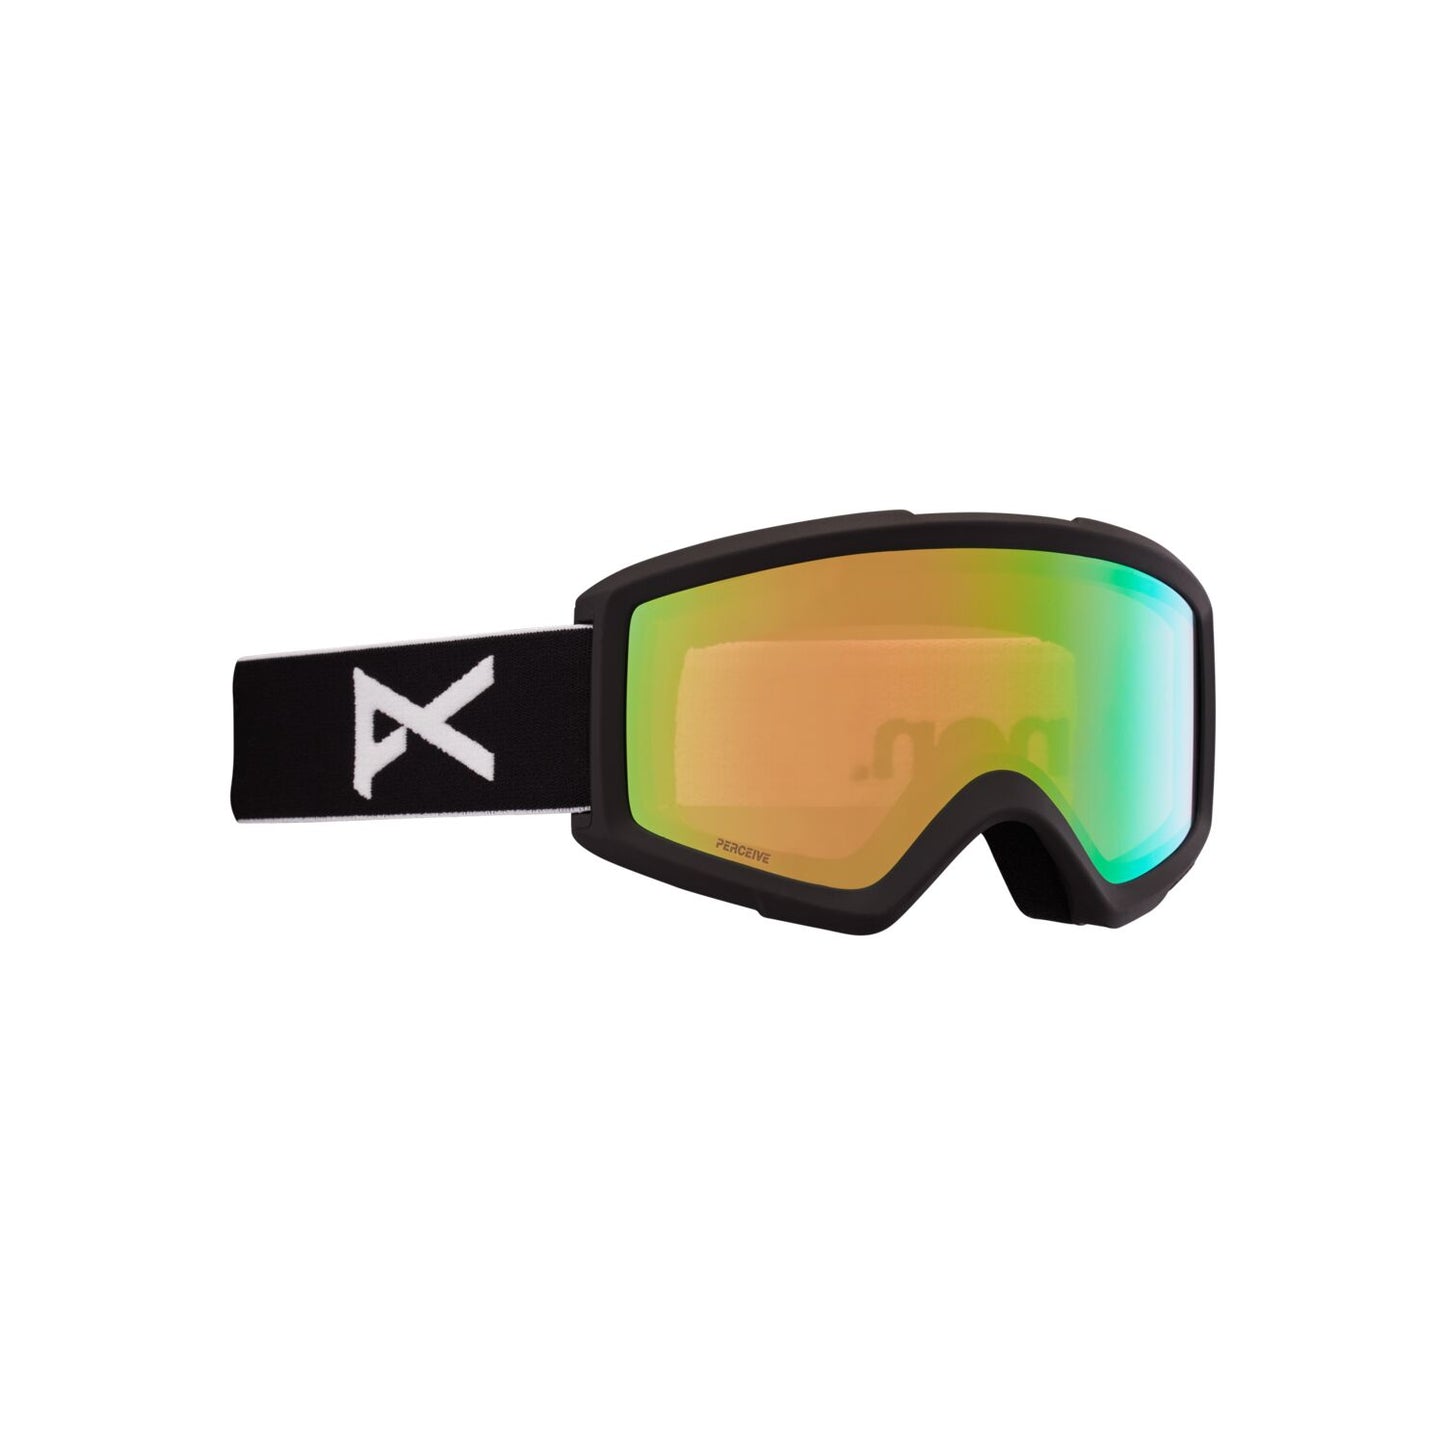 Helix 2.0 Goggles Black + Bonus Green Lens